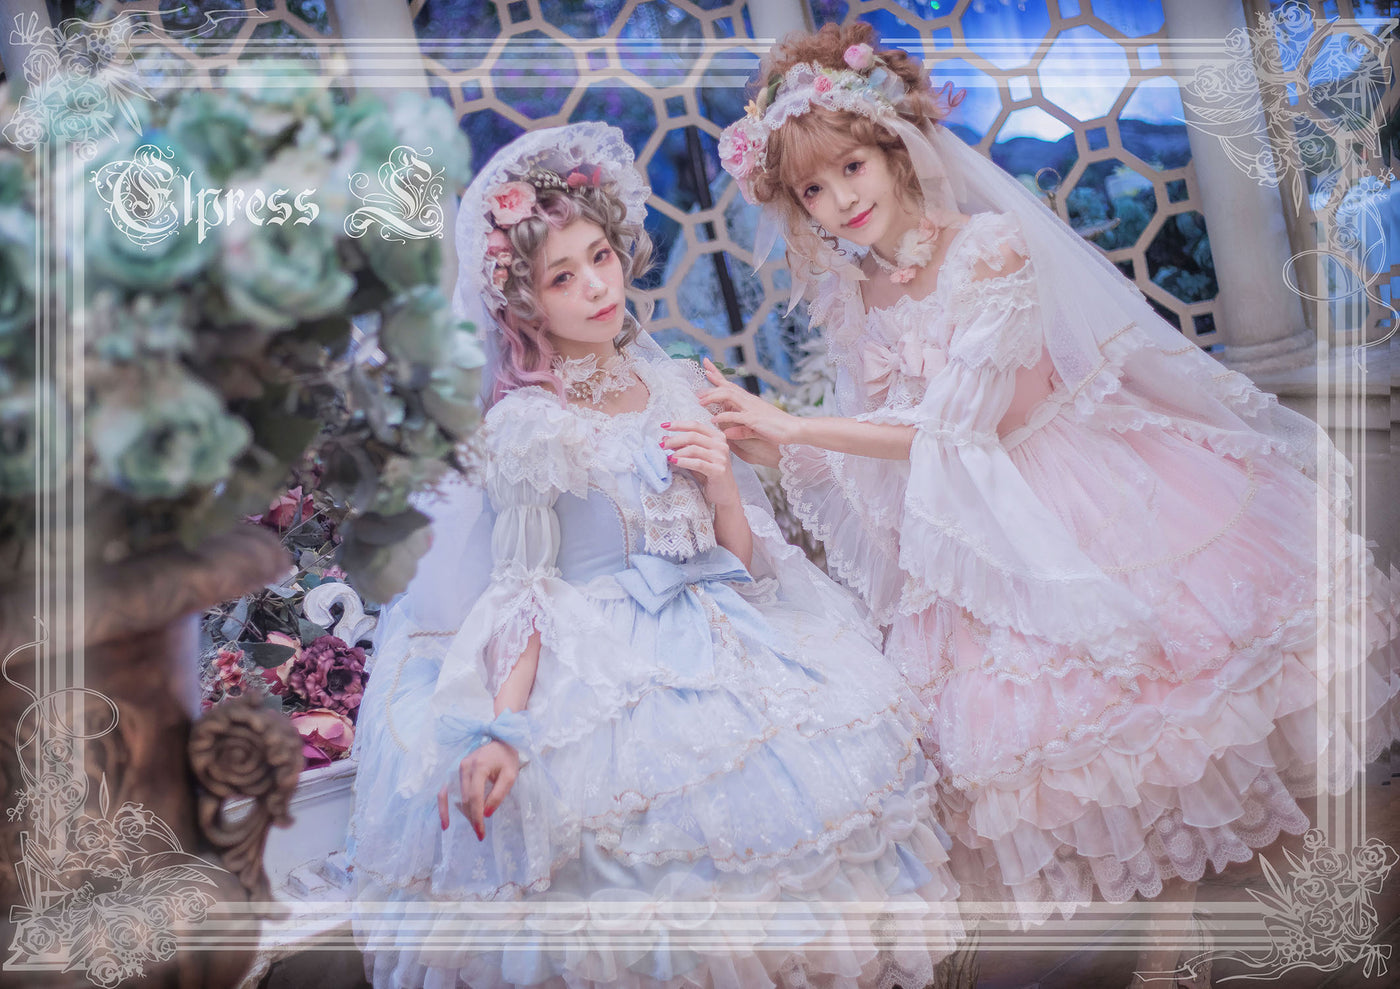 Elpress L~Christmas E~Light Pink Sweet Lolita Princess Jumper Skirt   